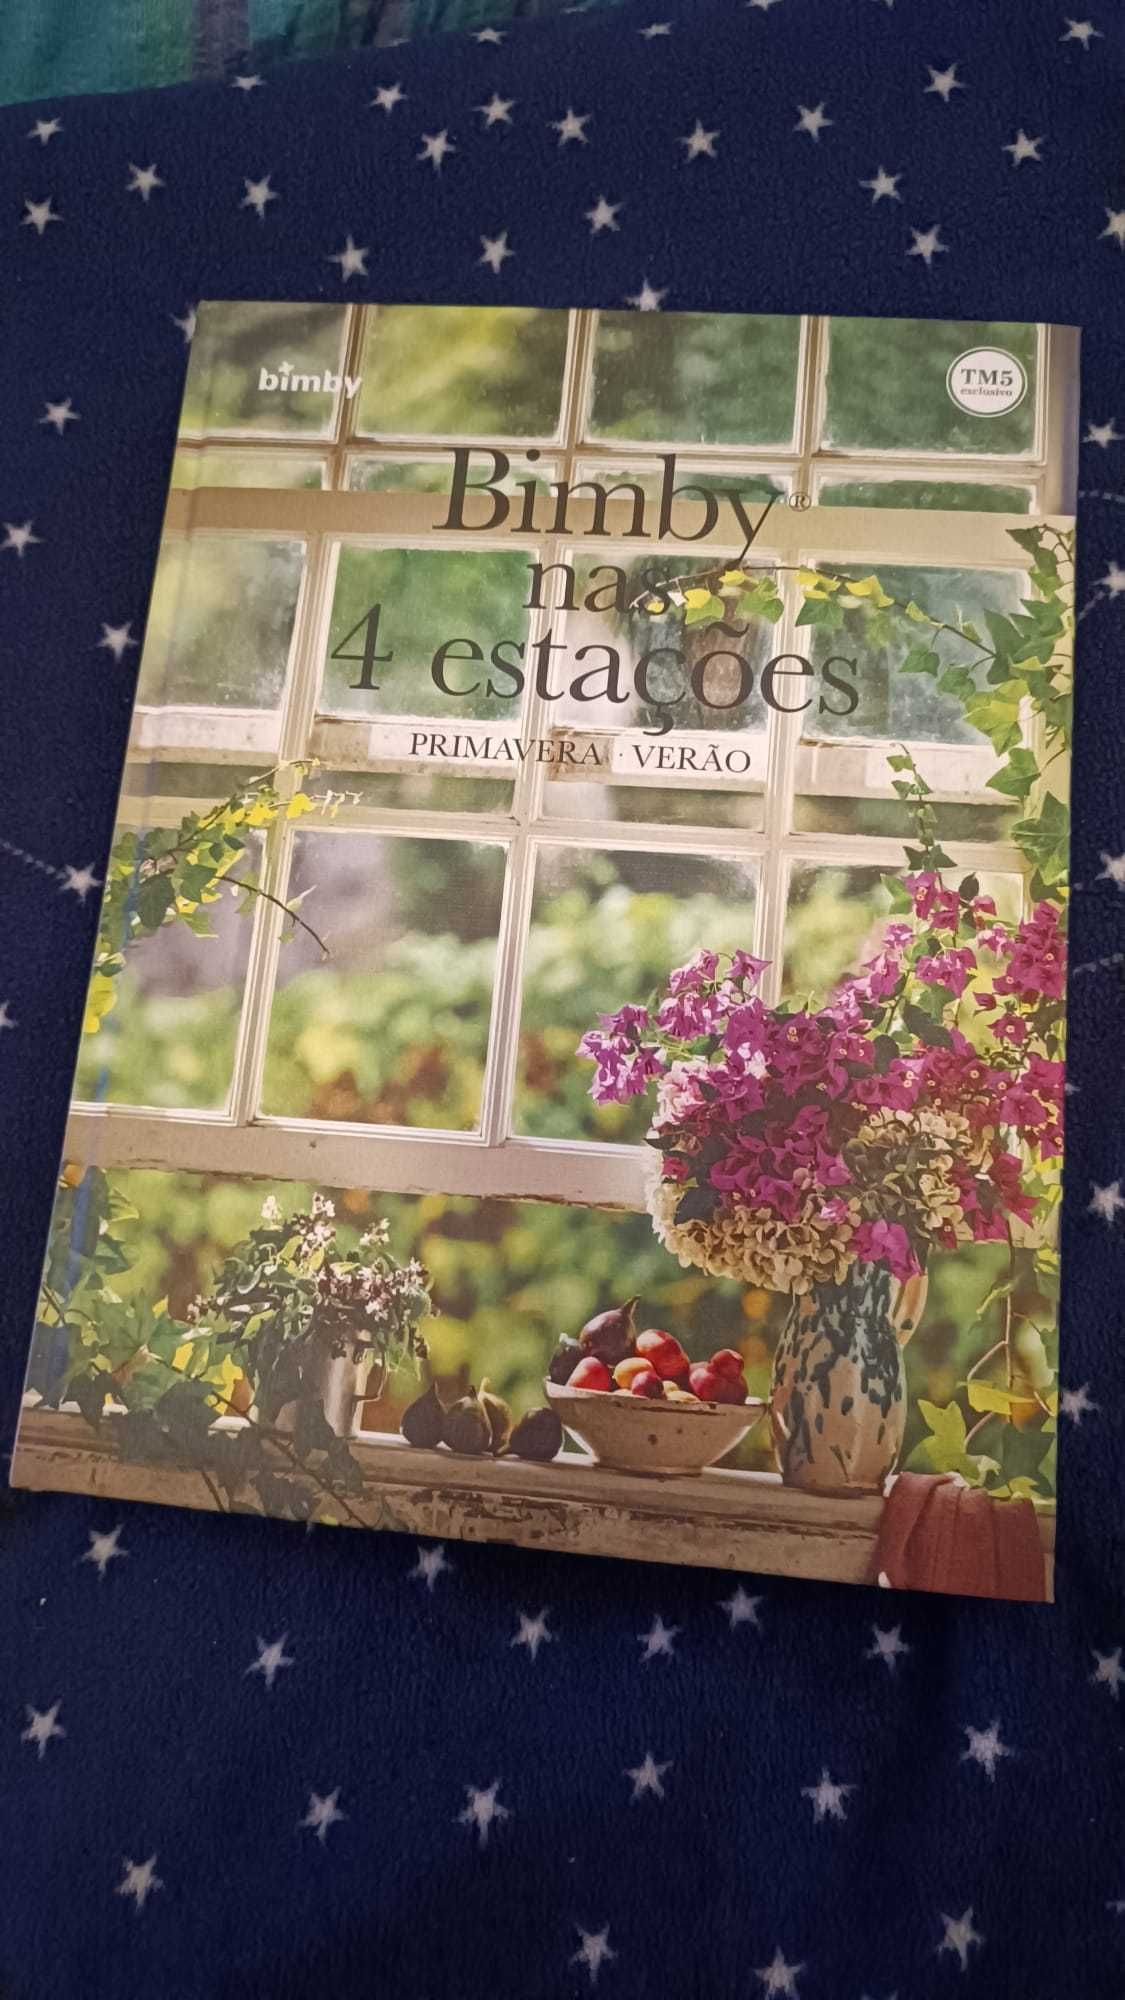 Livro "Bimby nas 4 estações" (NOVO e EMBALADO)